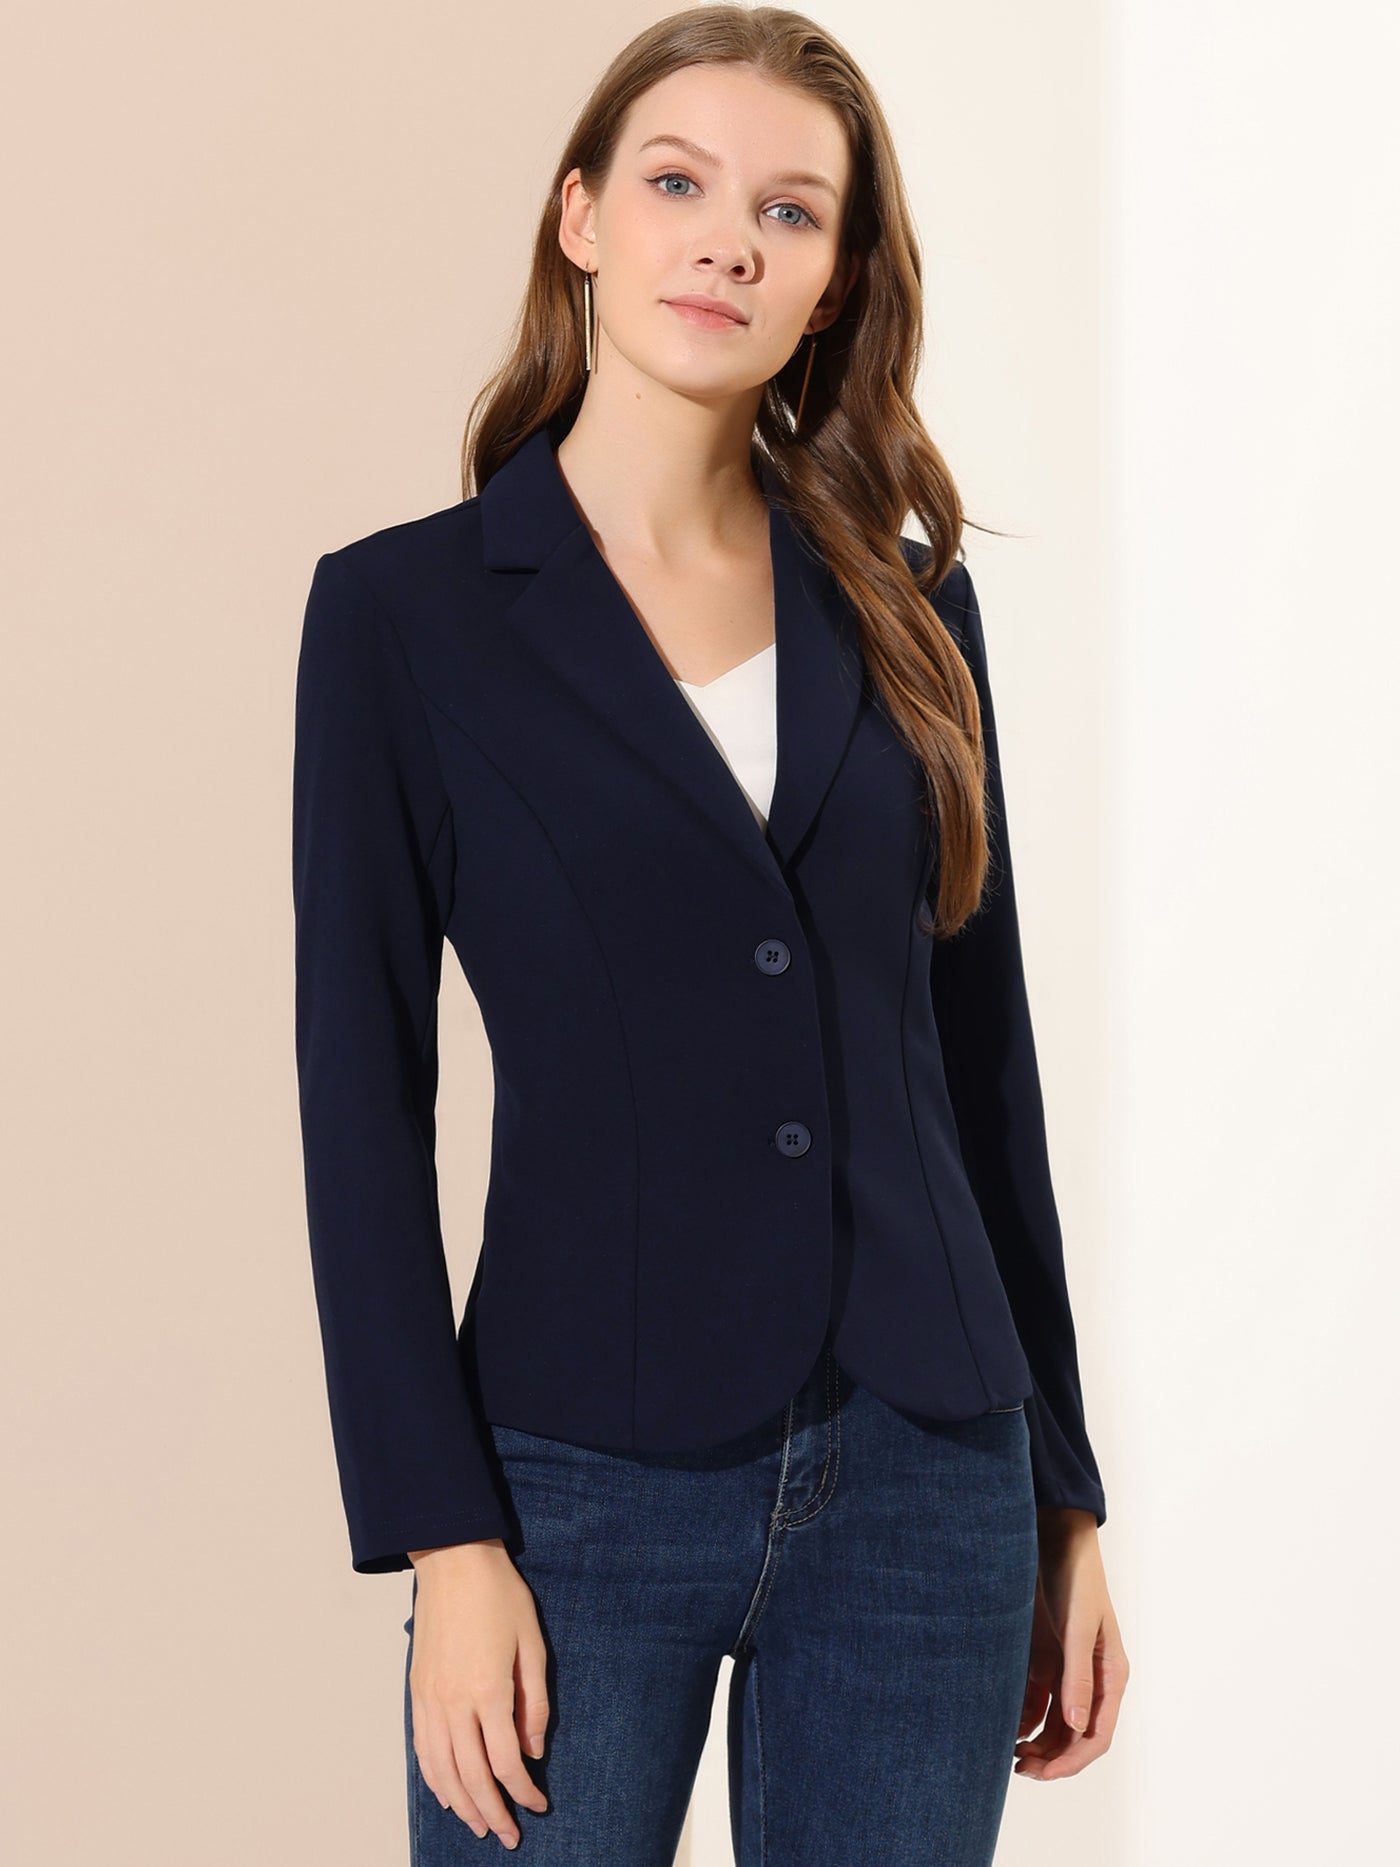 Allegra K Work Office Lapel Collar Stretch Jacket Suit Blazer